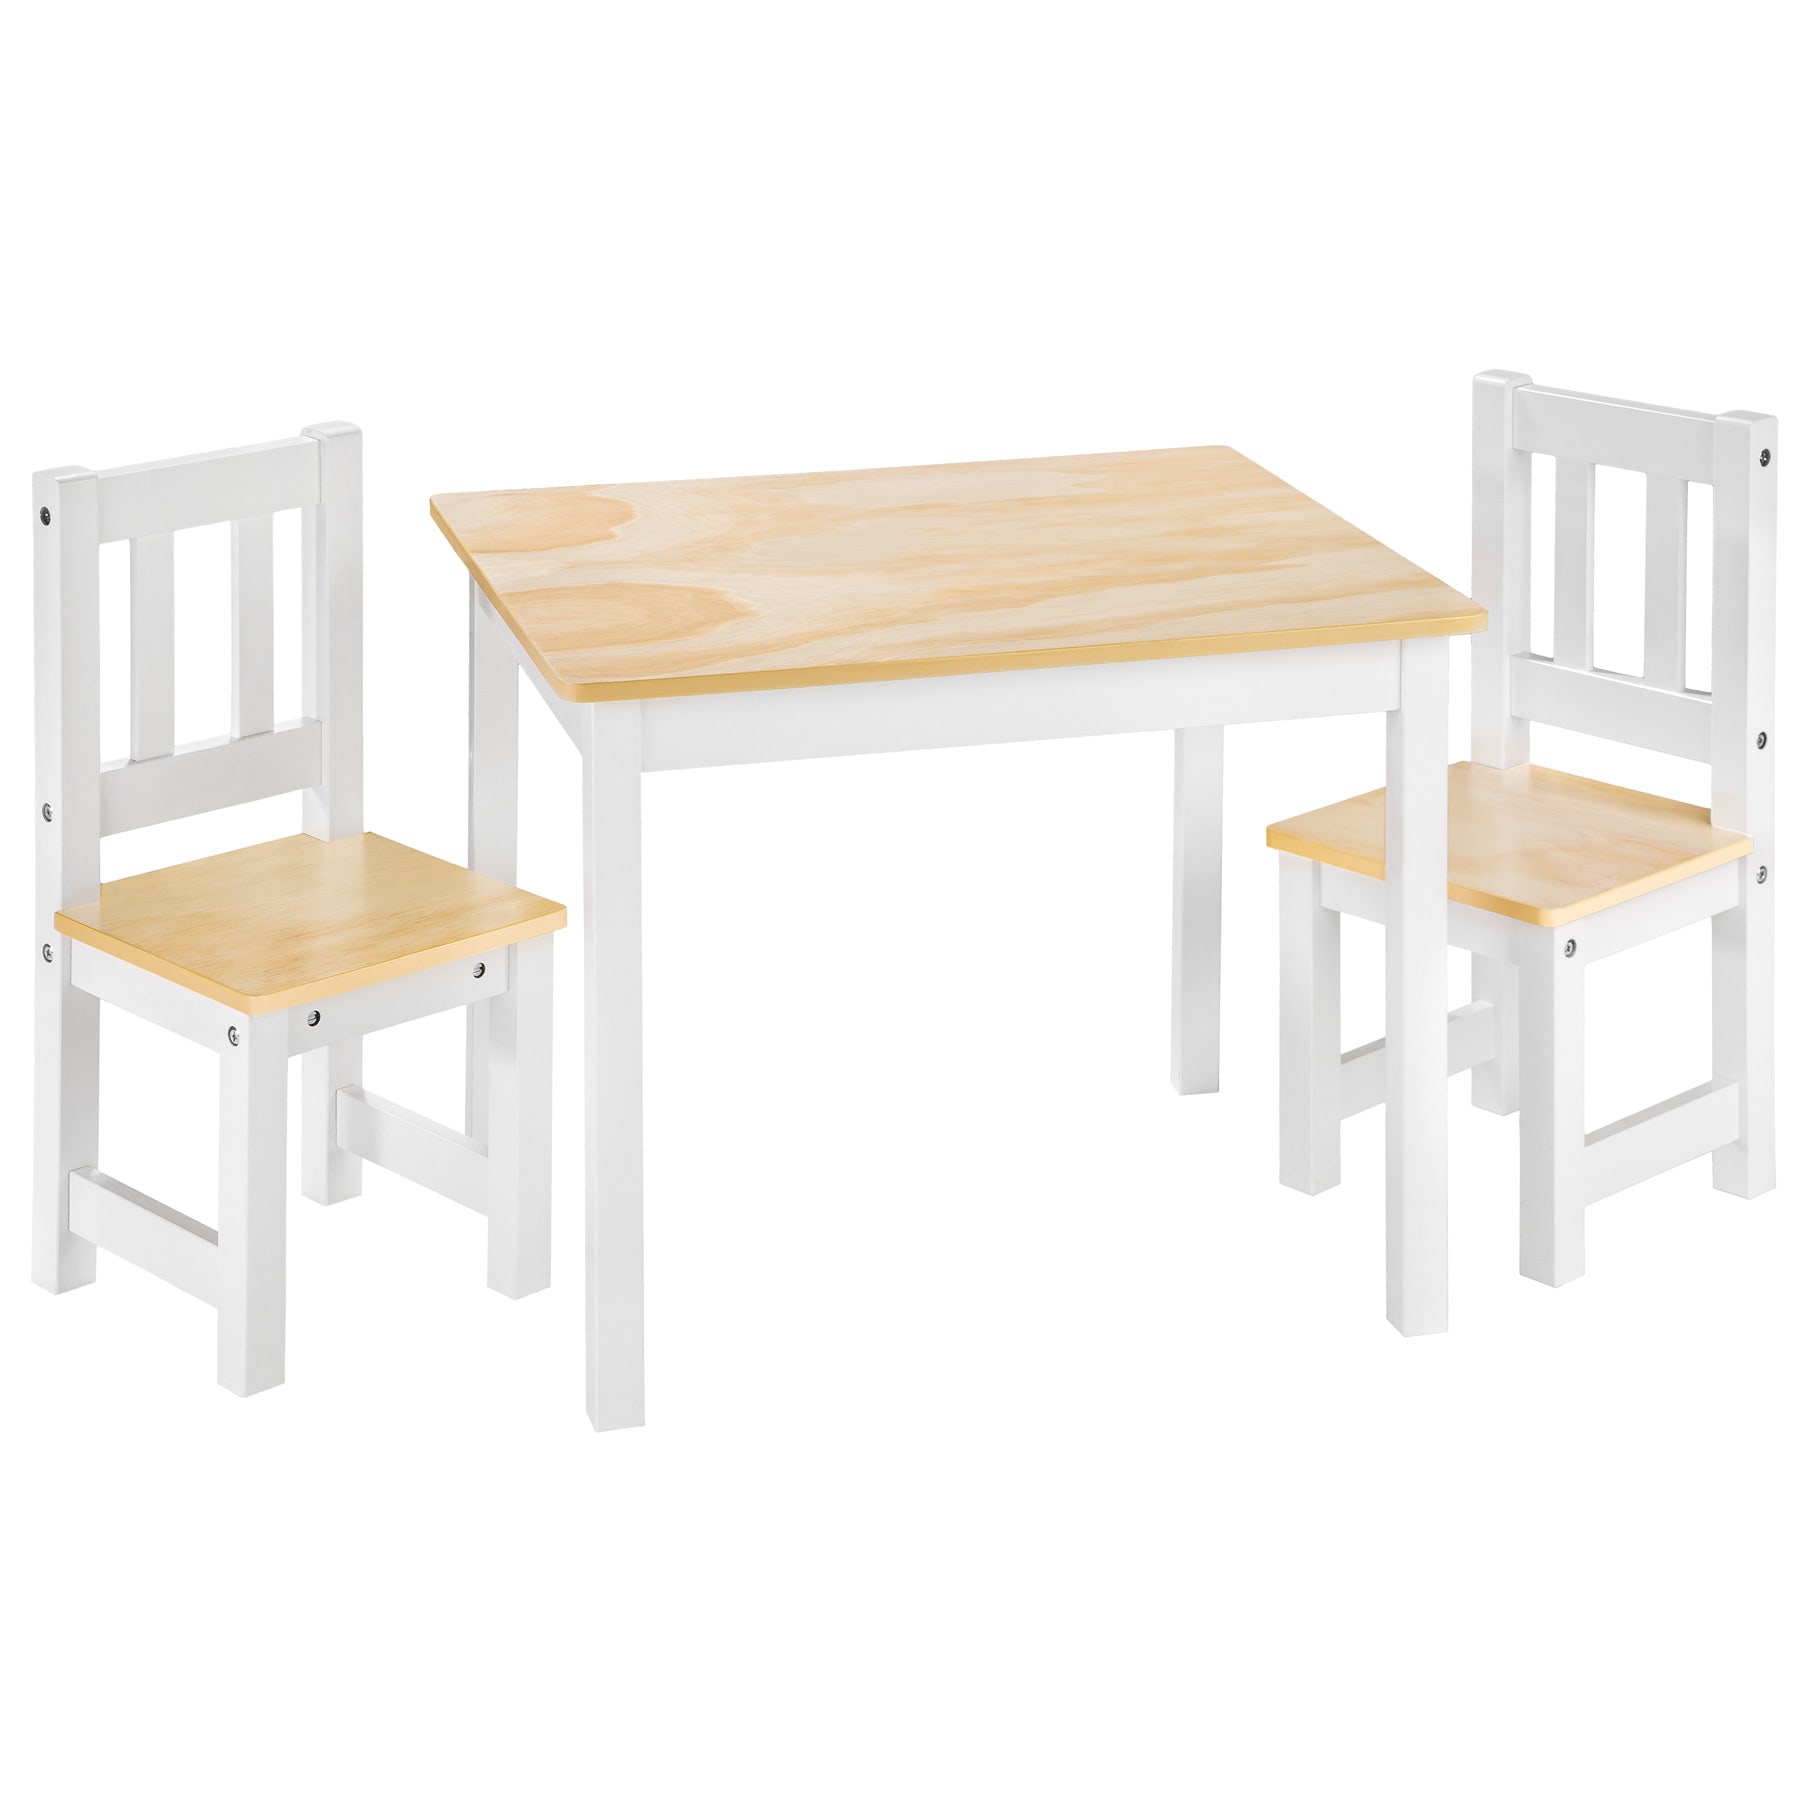 https://medias.maisonsdumonde.com/images/f_auto,q_auto/v1/mkp/M22048600_1/set-tavolino-e-2-sedie-per-bambini-bianco.jpg